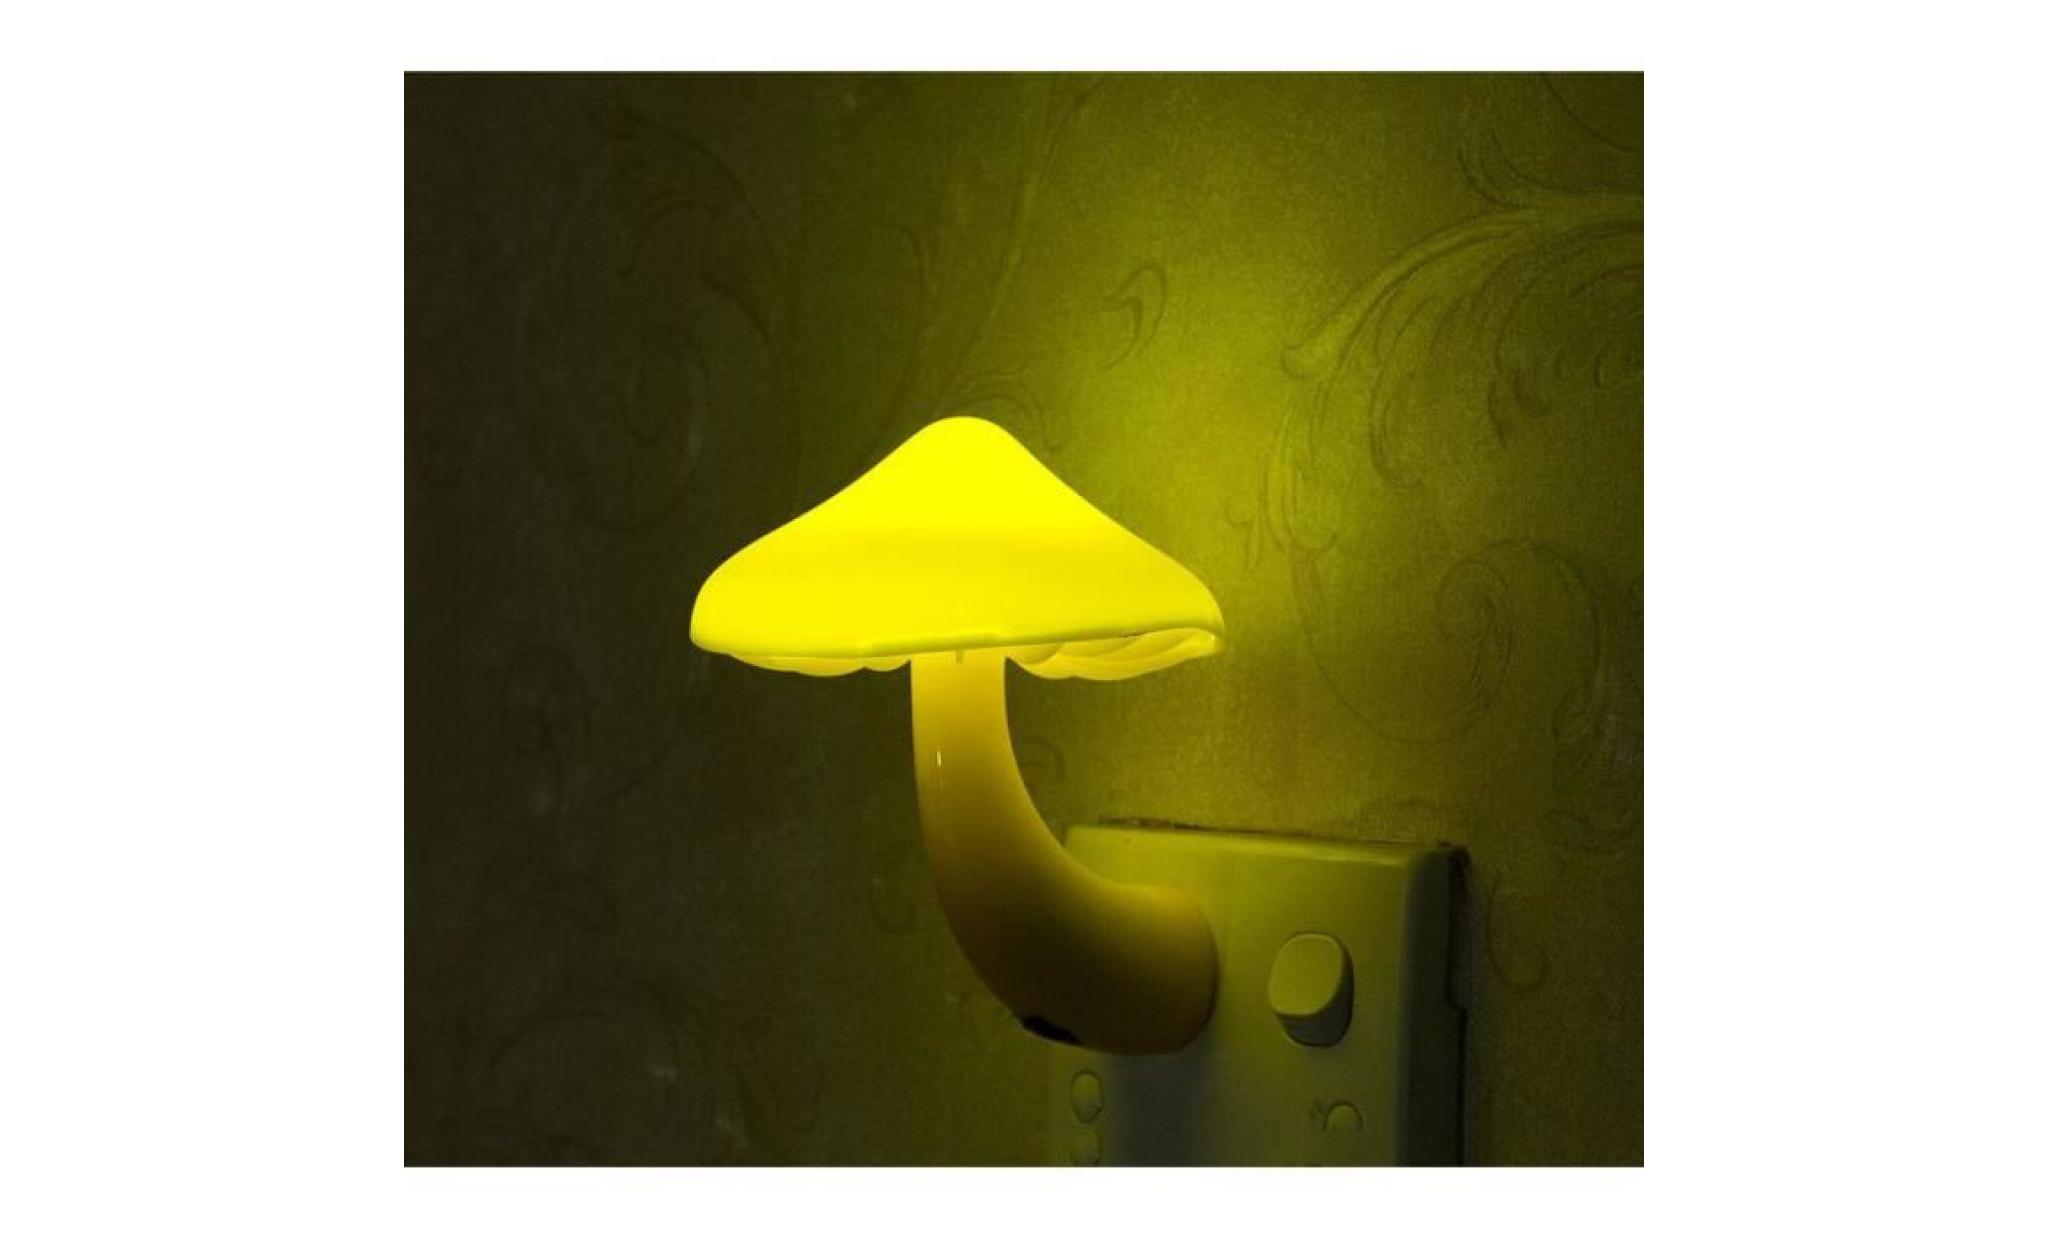 mini applique murale chevet  led forme champignon allumage inductive dimension 10*8cm puissance 0.5w idéal pour chambre lumière nuit pas cher